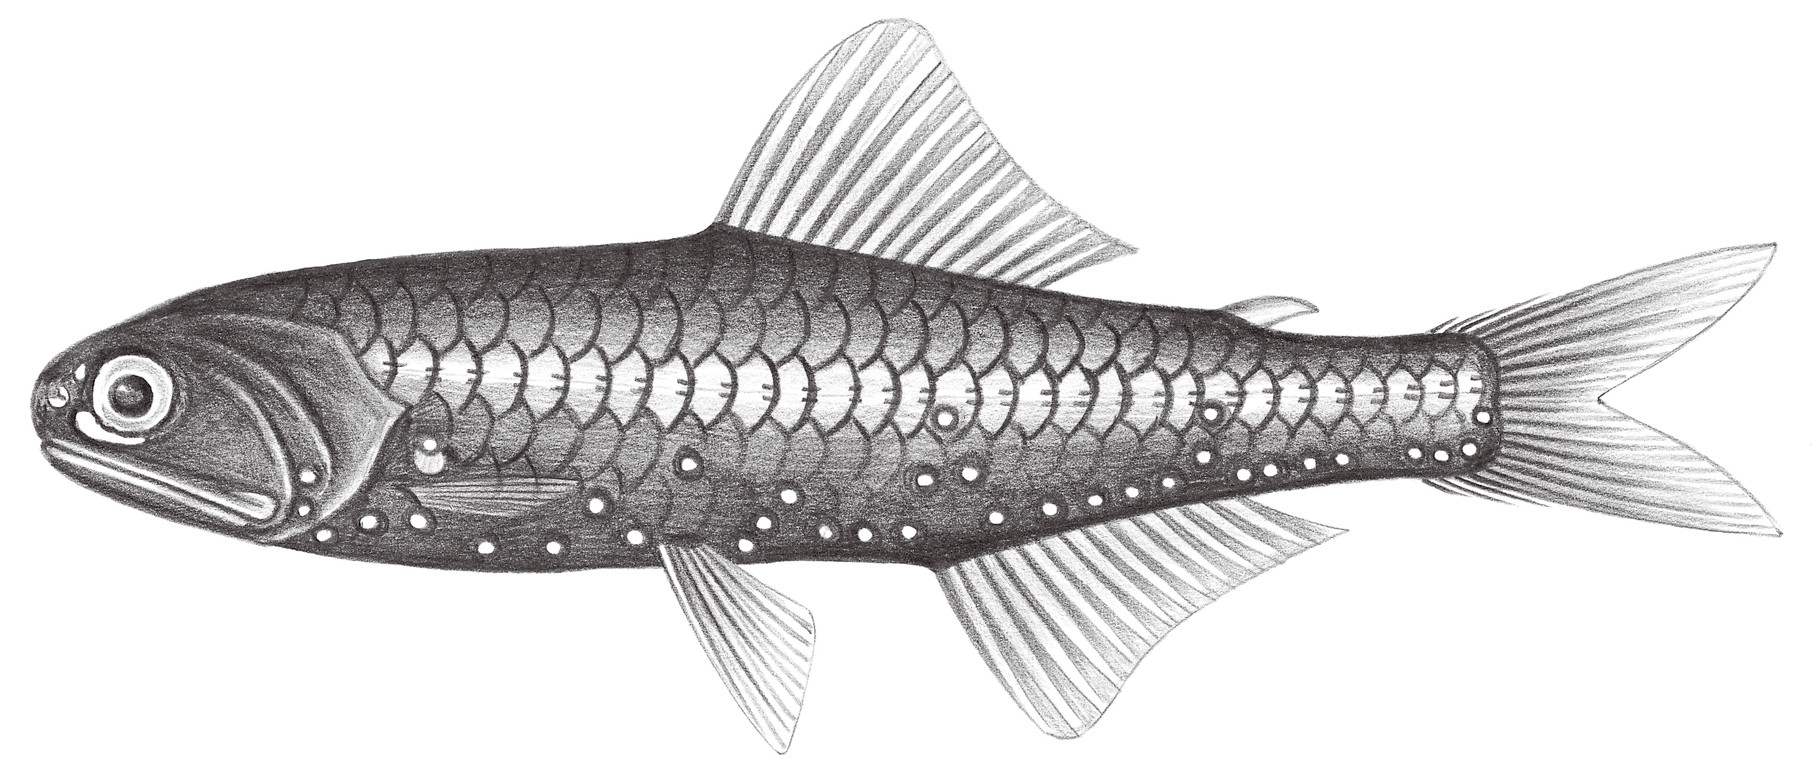 506.	呂氏眶燈魚 Diaphus luetkeni (Brauer, 1904)